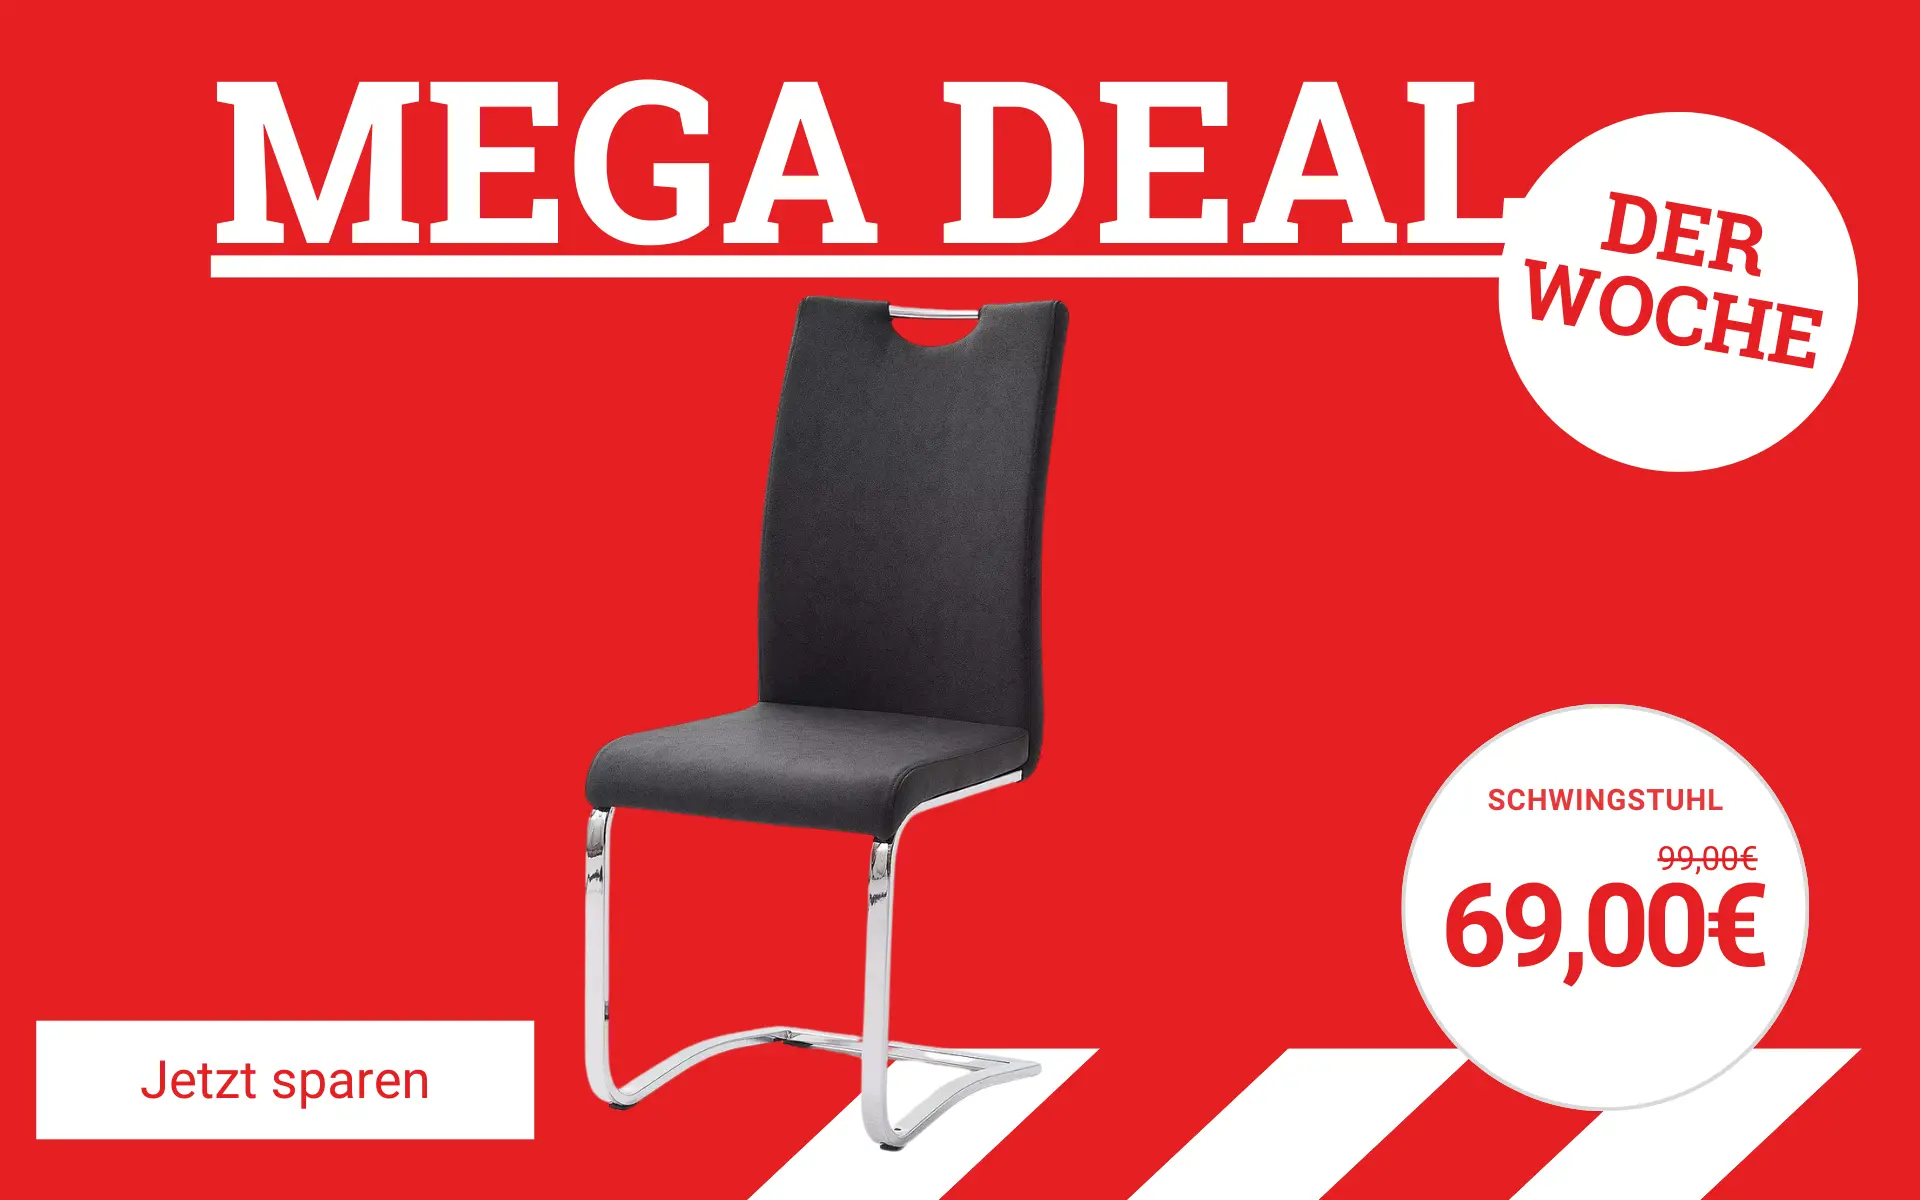 MEGA Deal der Woche - Jetzt sparen